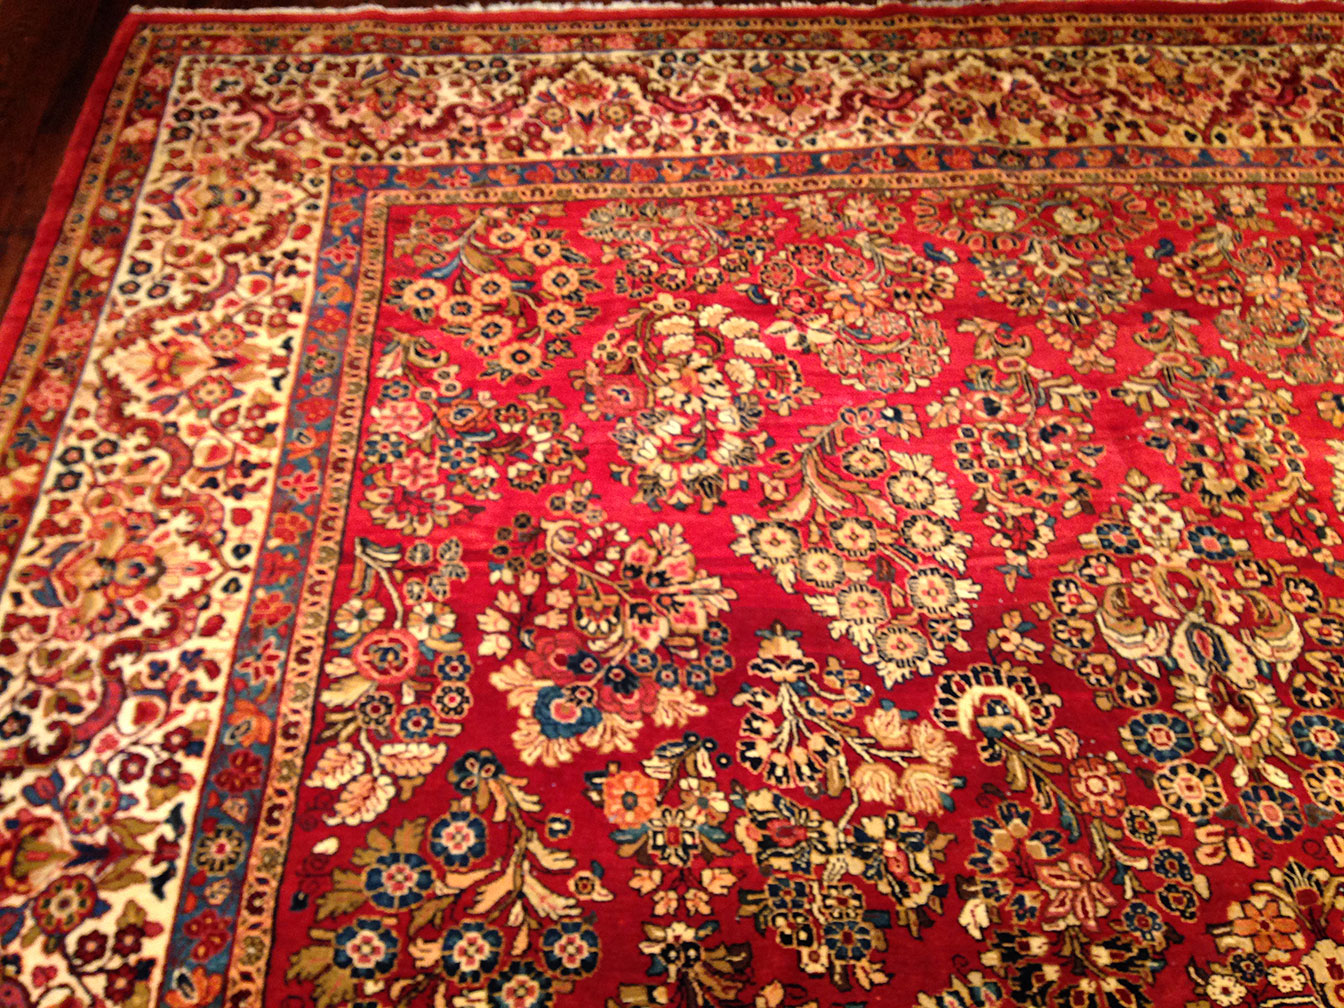 Antique sarouk Carpet - # 8947